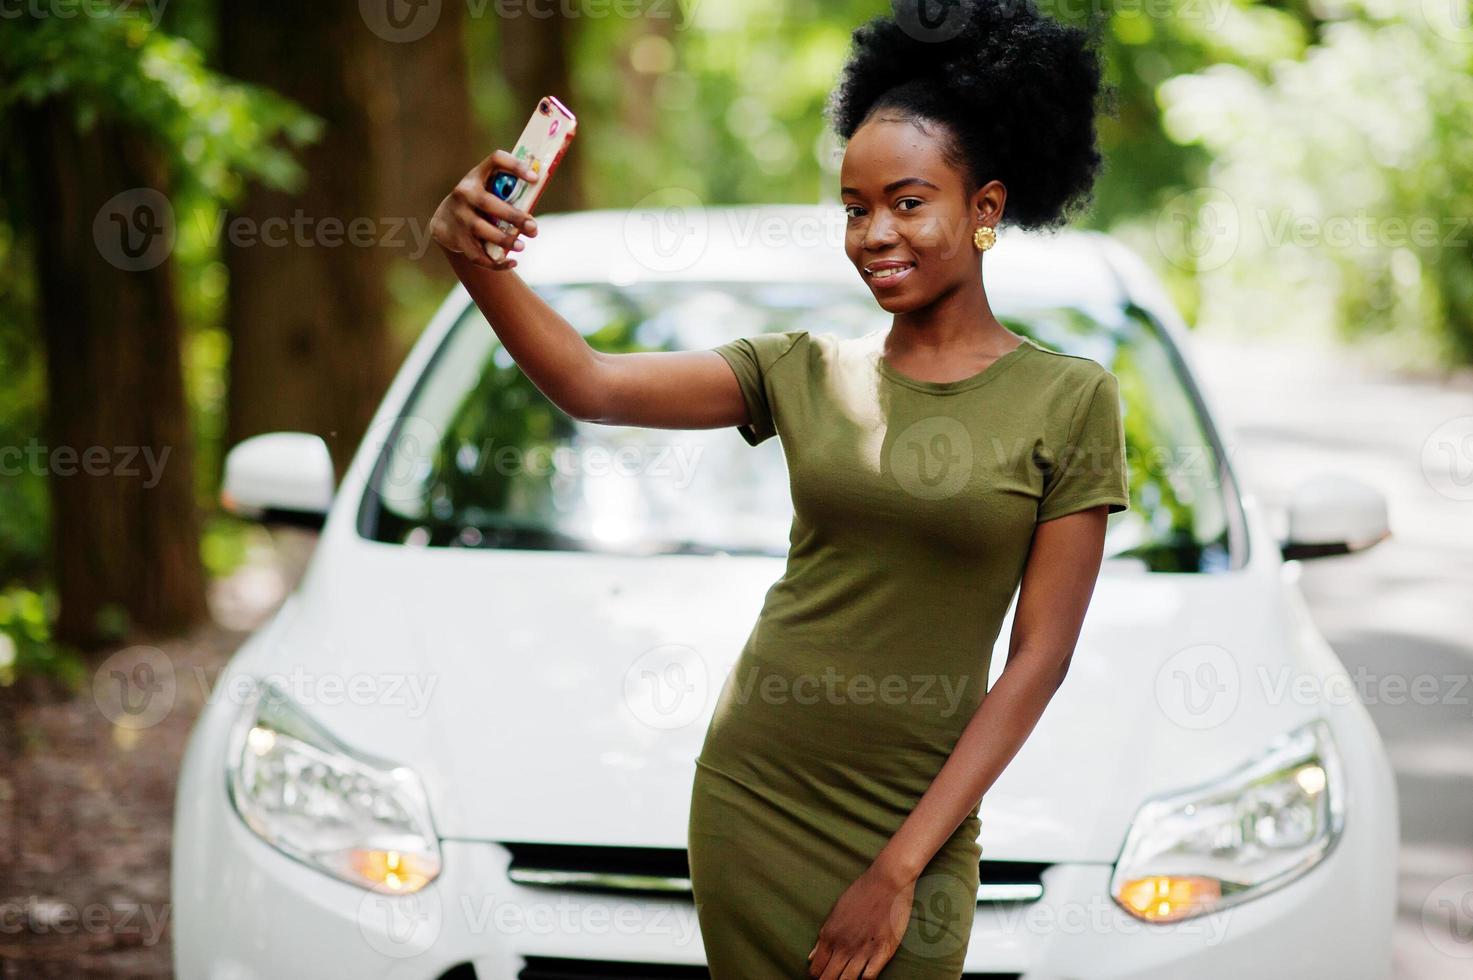 afrikansk amerikansk kvinna poserade mot vit bil i skogsväg och tittar på mobiltelefonen. foto